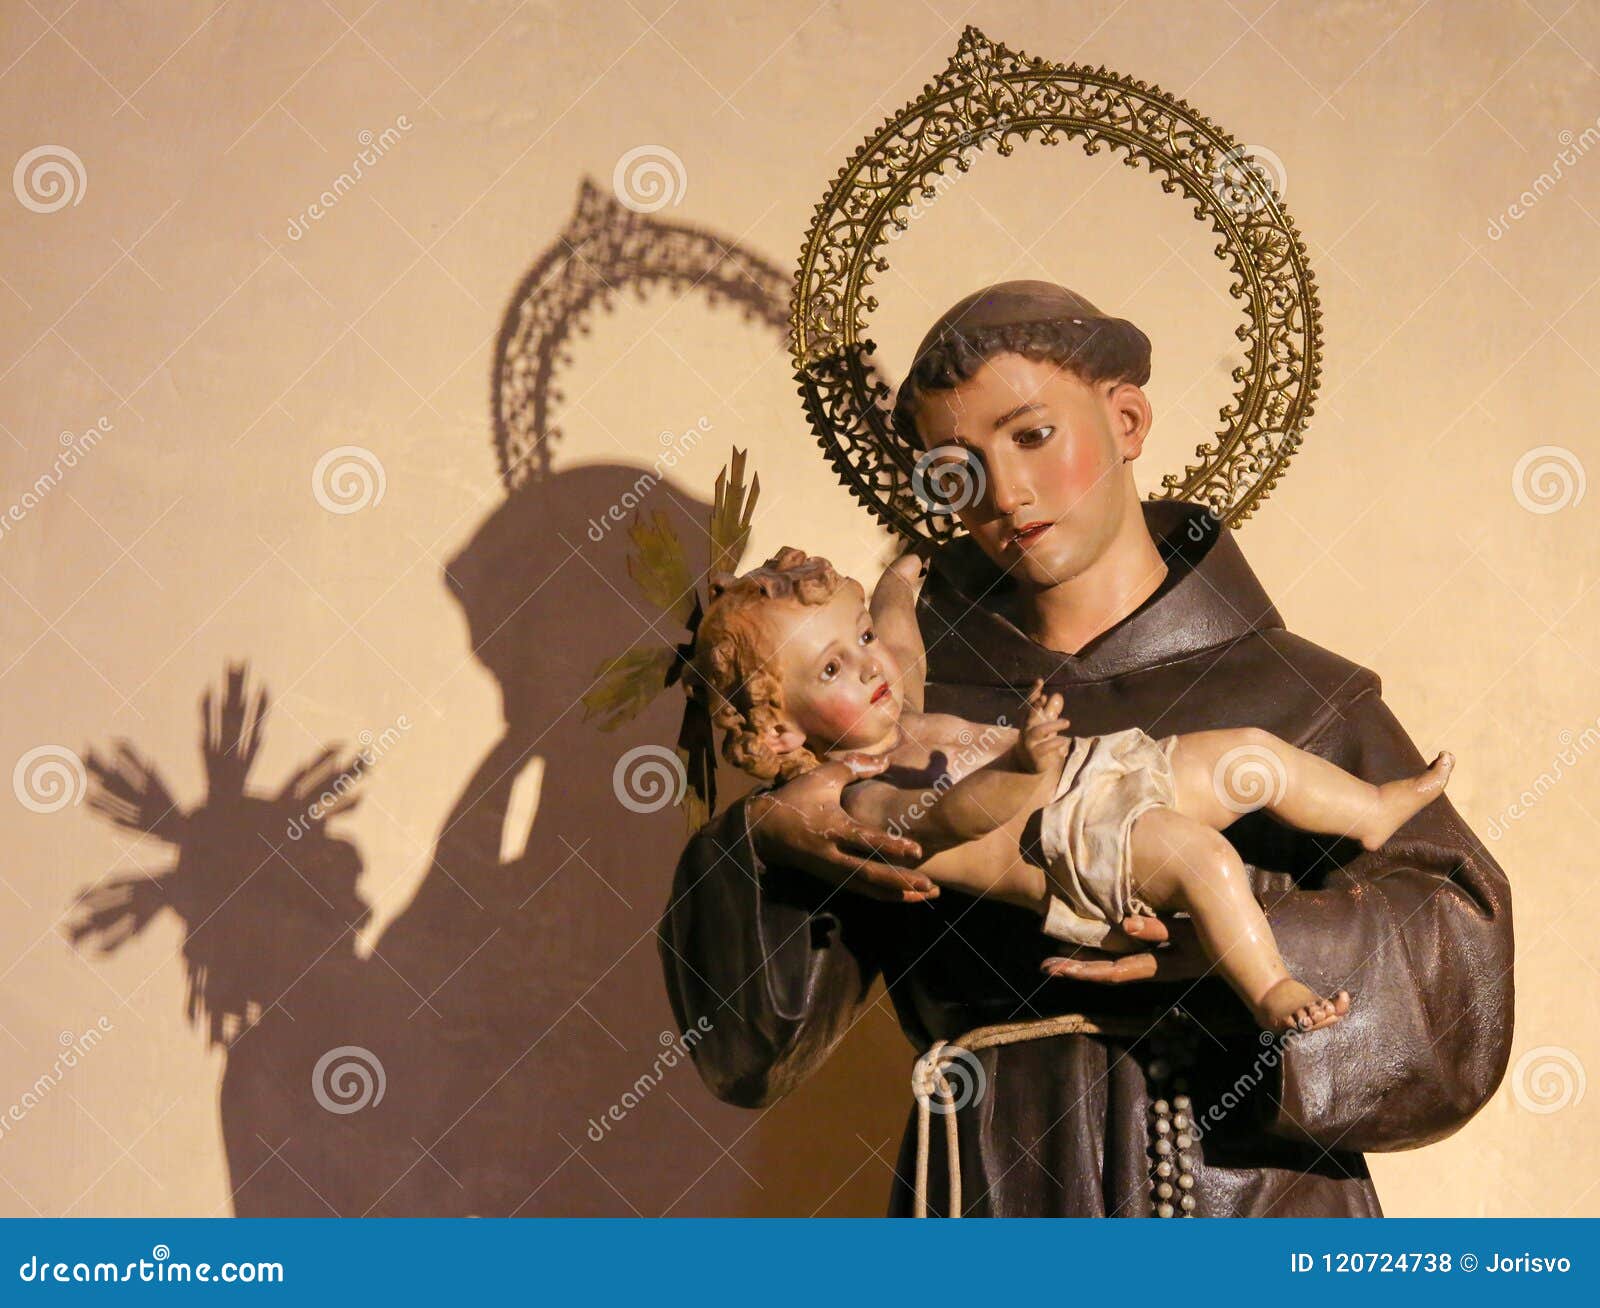 saint anthony of padua holding baby jesus